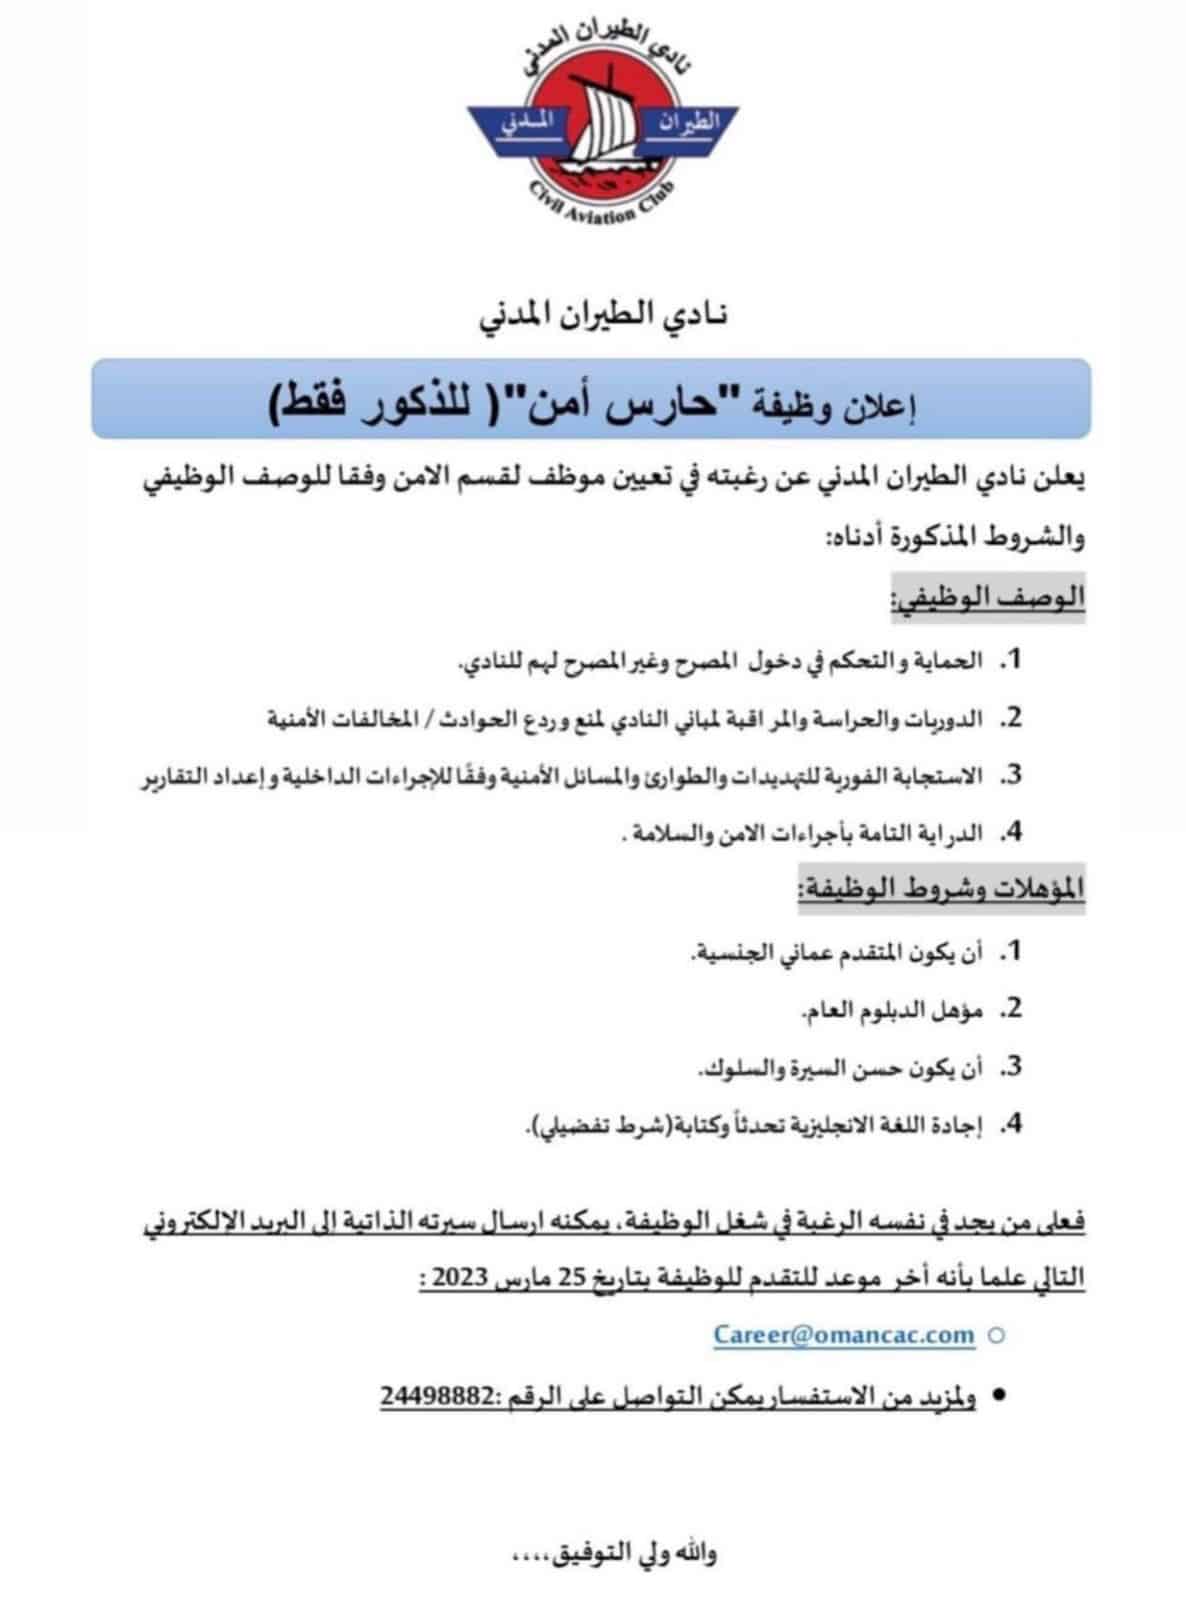 نادي الطيران المدني في سلطنة عمان تعلن عن وظائف شاغرة برواتب ومزايا عالية لجميع الجنسيات